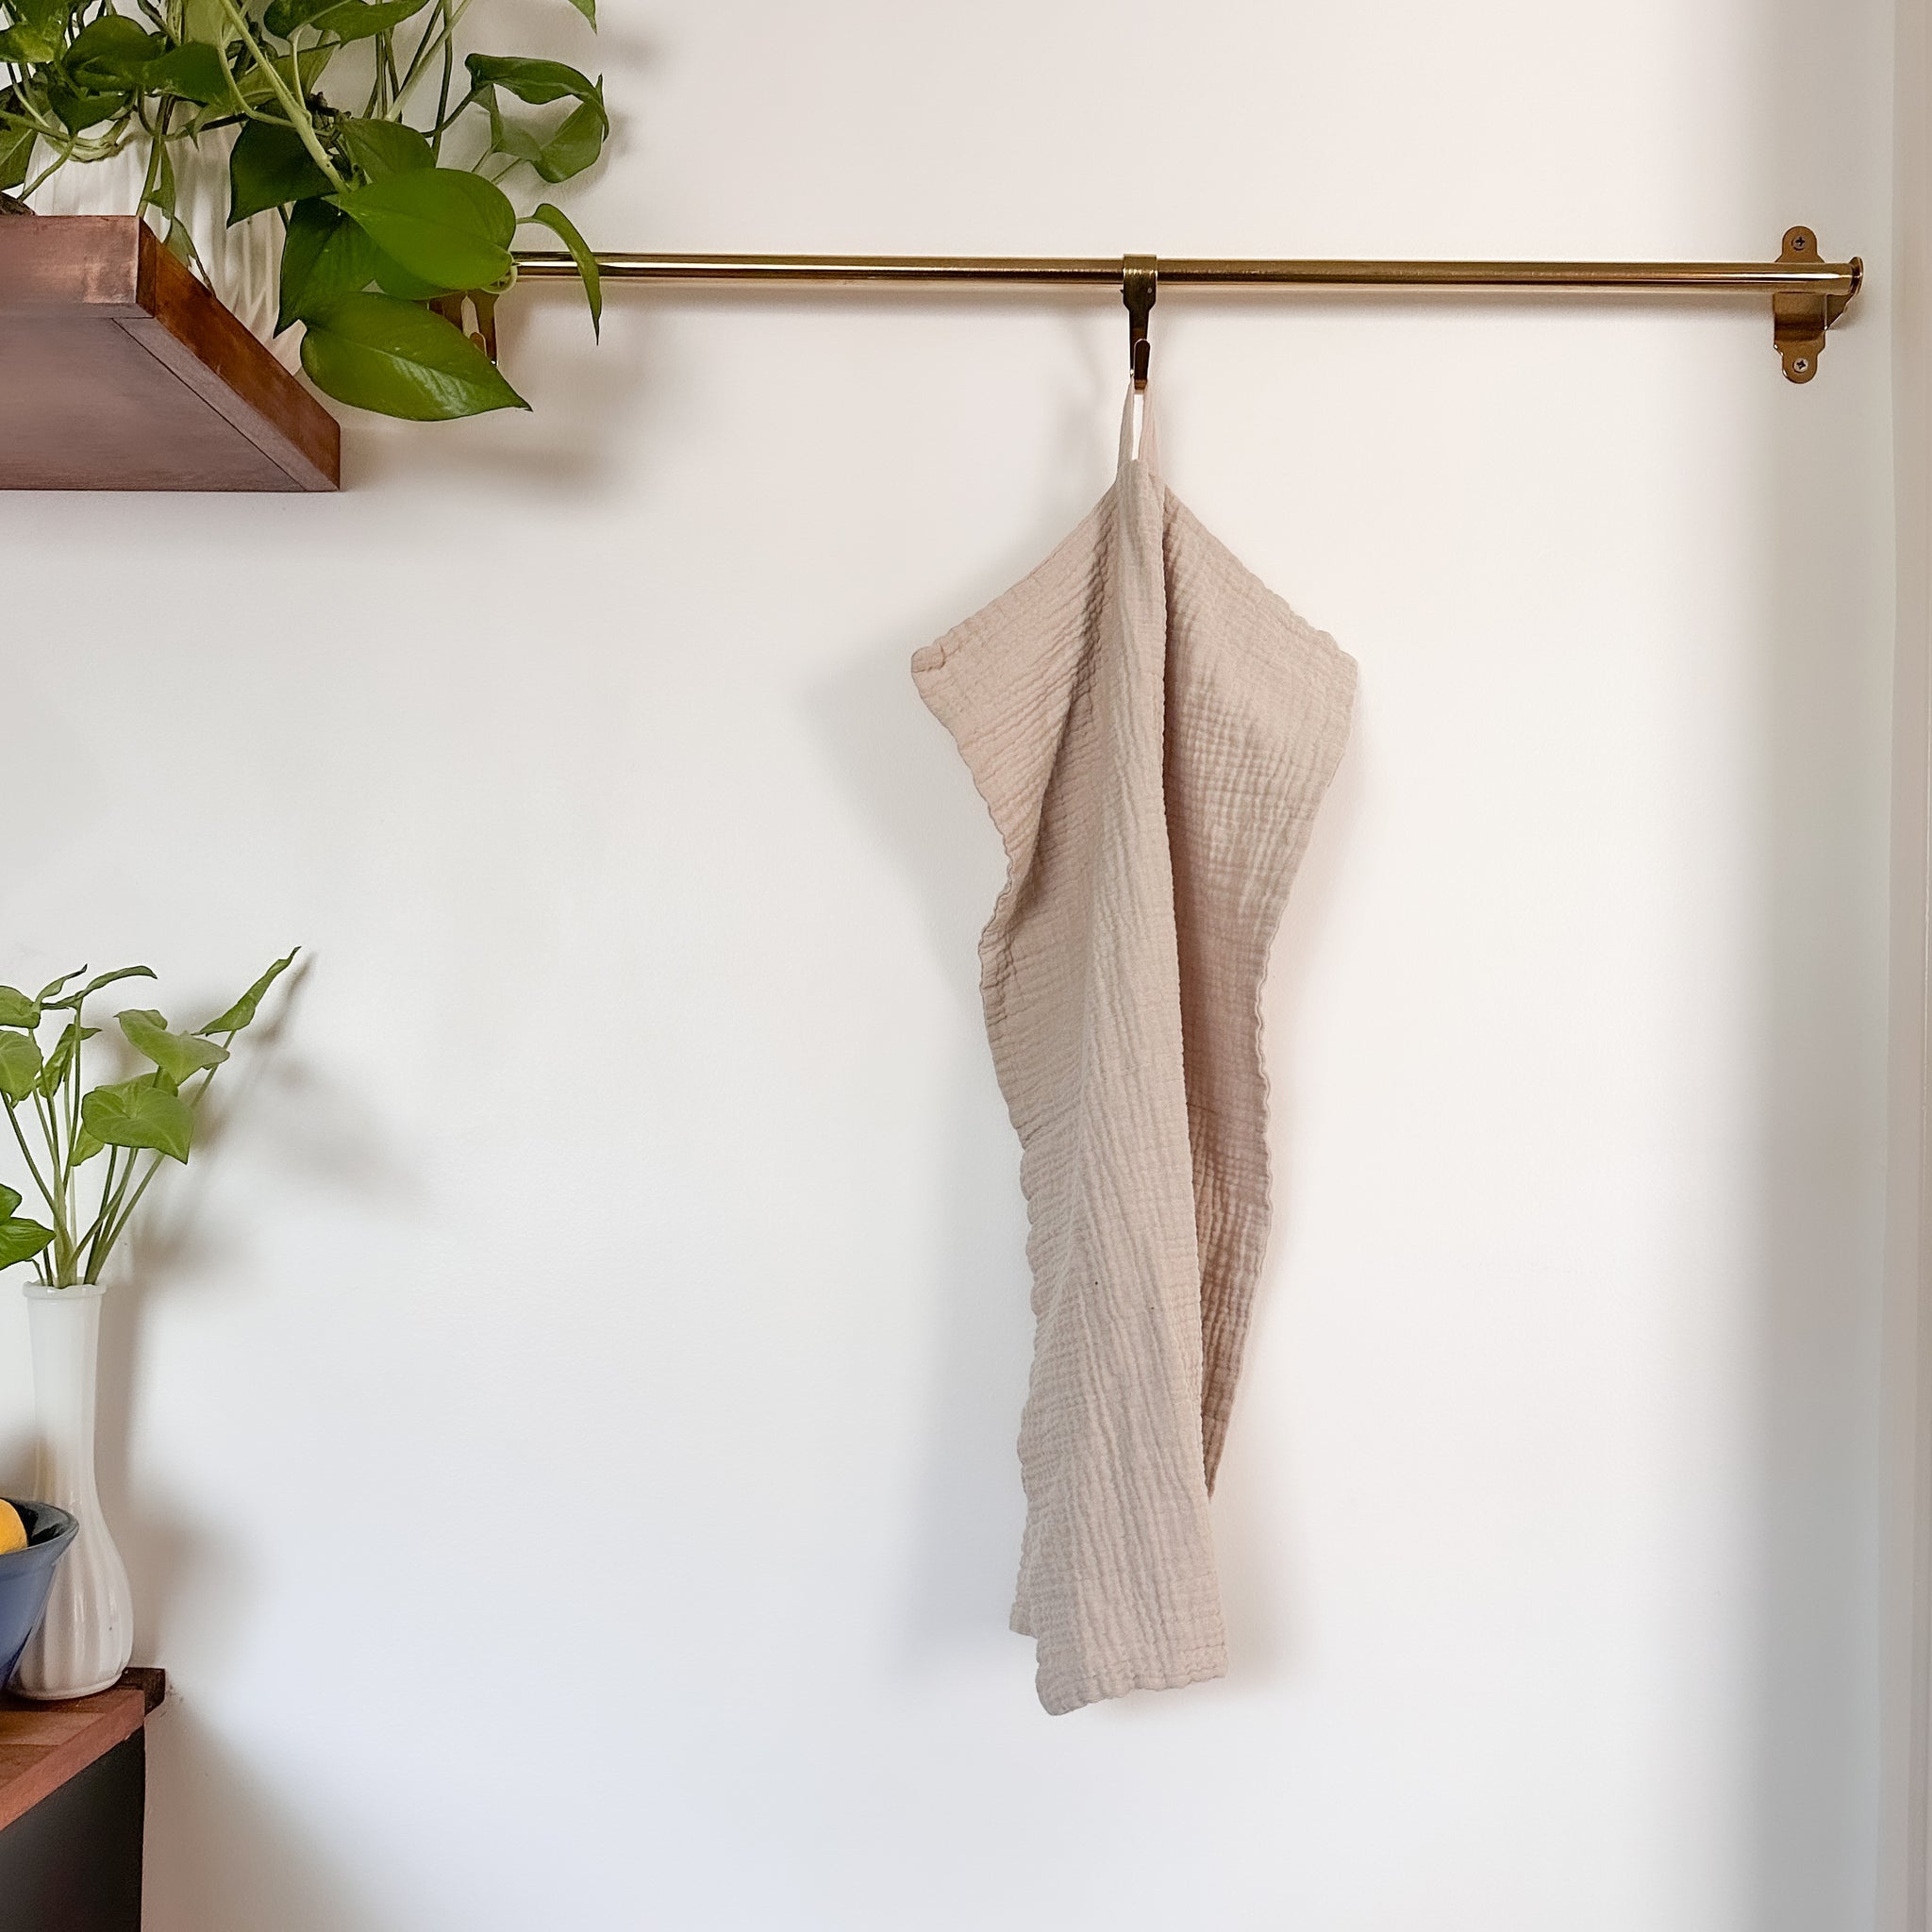 Towel With Loop 